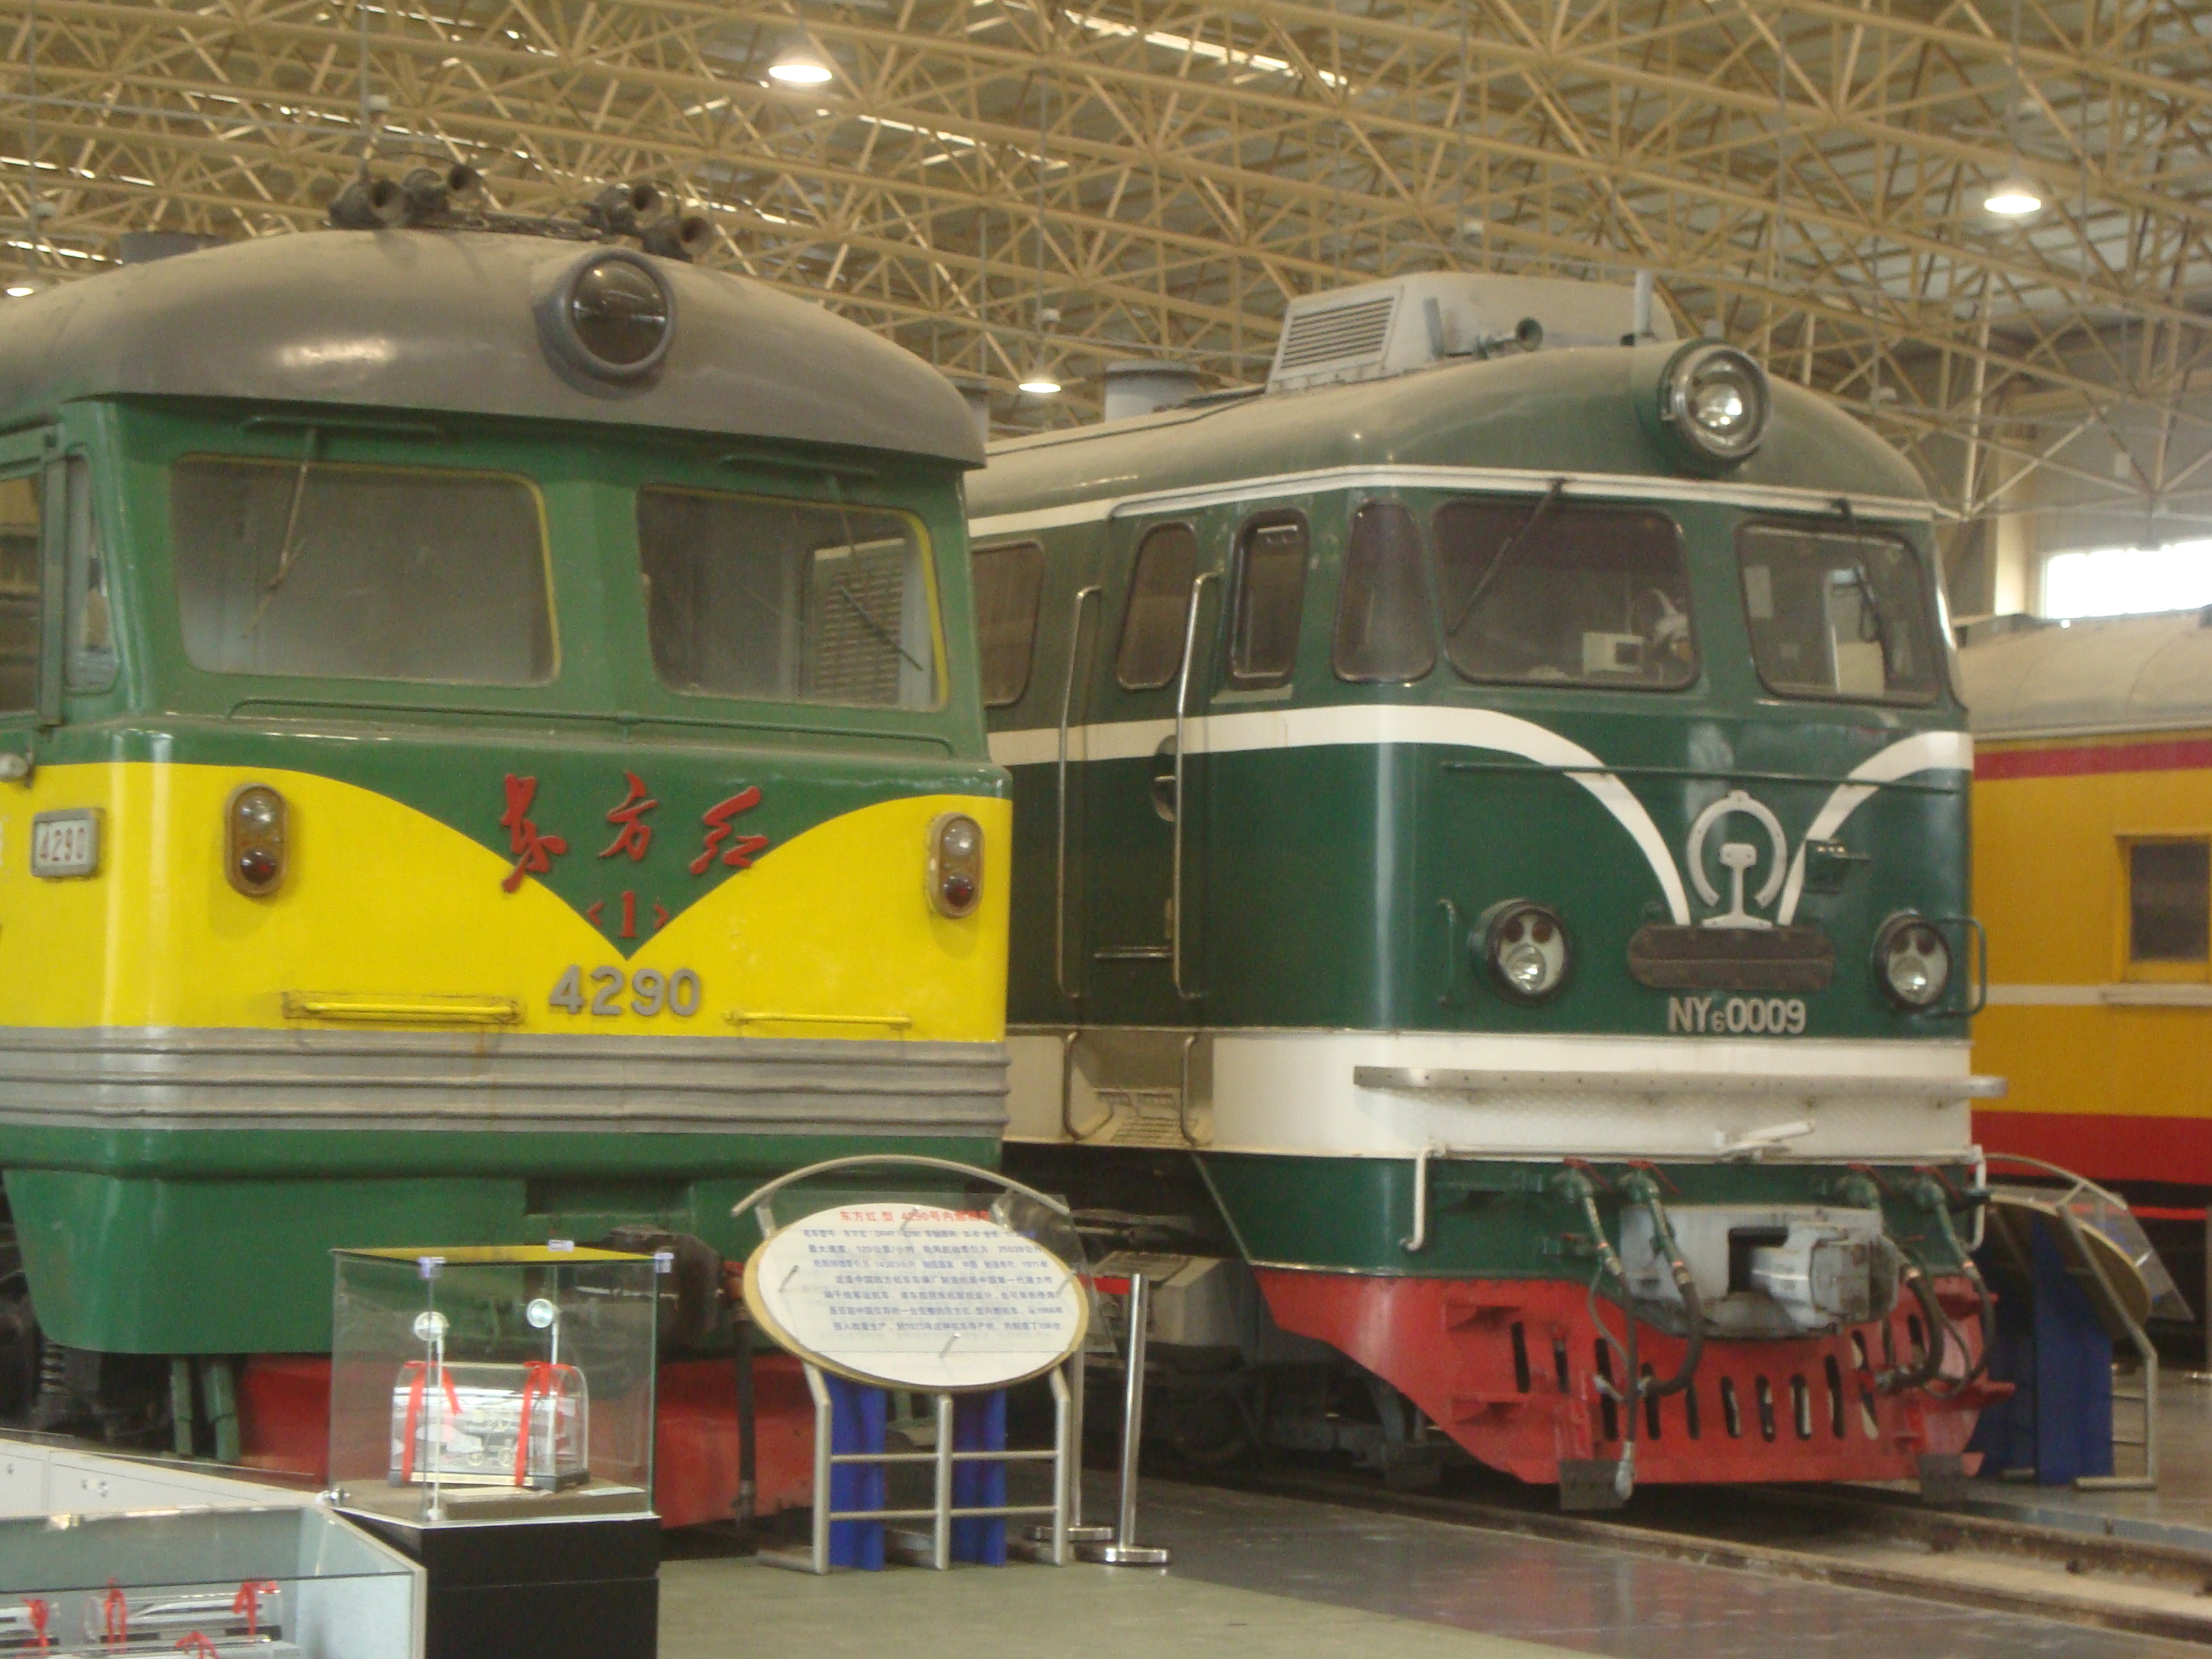 保存在中國鐵道博物館的東方紅1型4290號機車與NY6型0009號機車